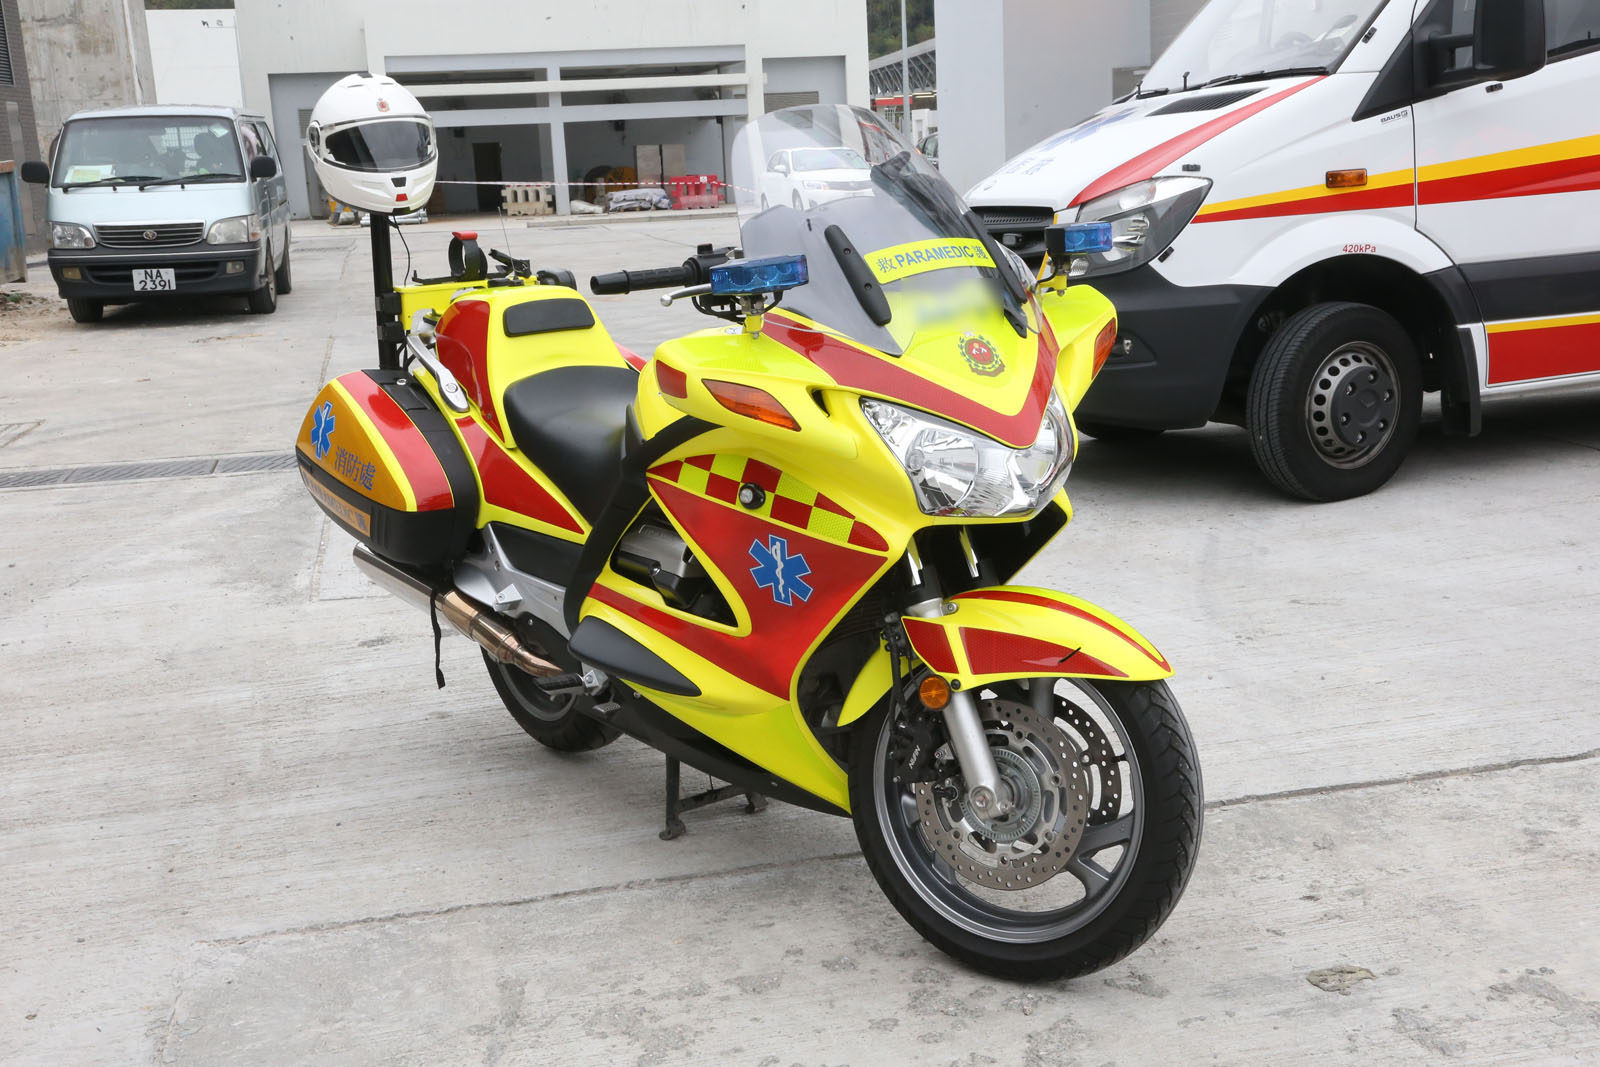 相片 1: 消防處急救醫療電單車